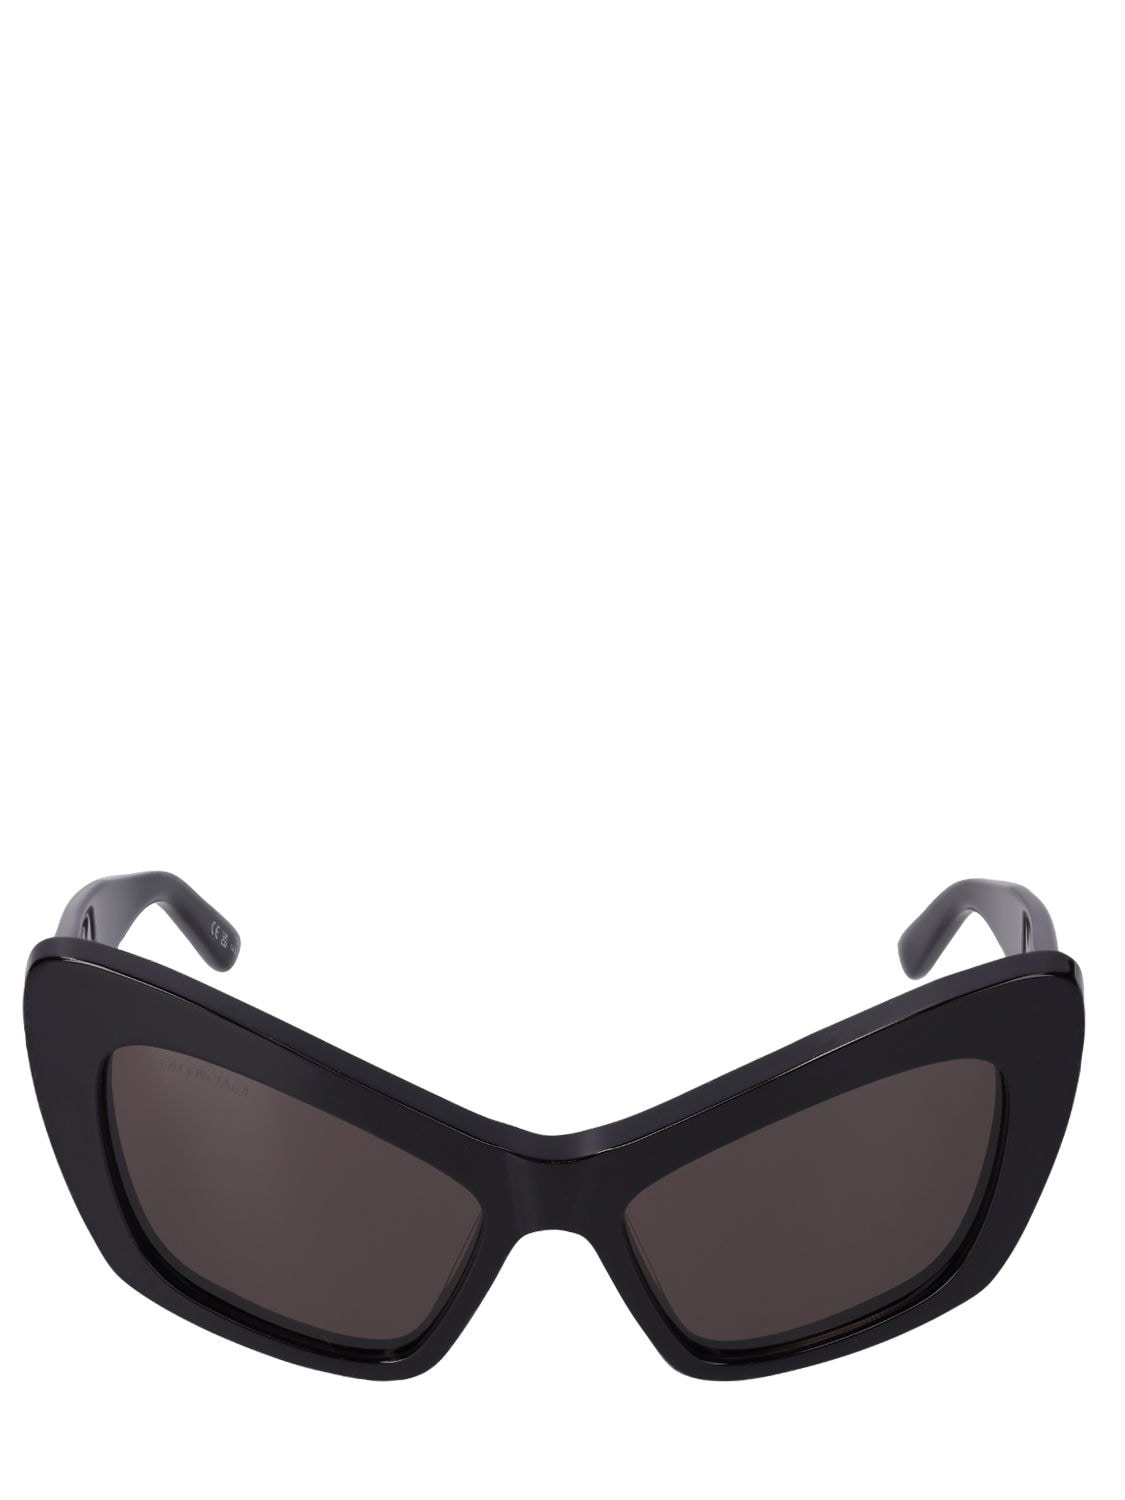 Image of 0293s Monaco Cat Acetate Sunglasses